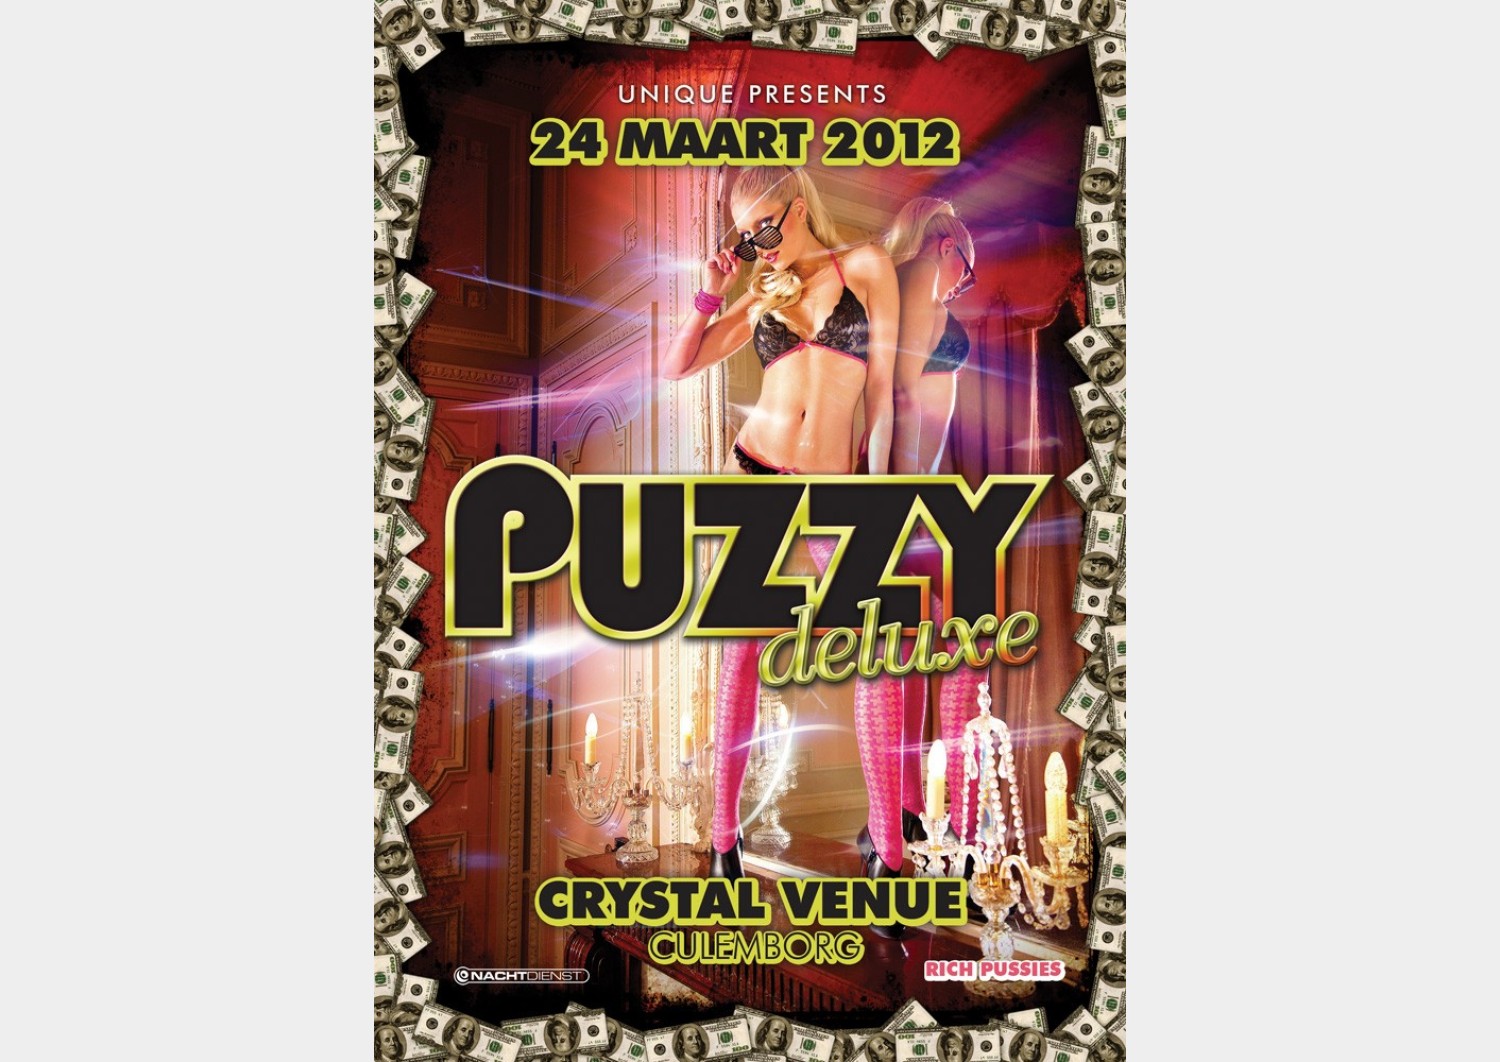 Party nieuws: Crystal Venue host de hardstyle area bij Puzzy Deluxe